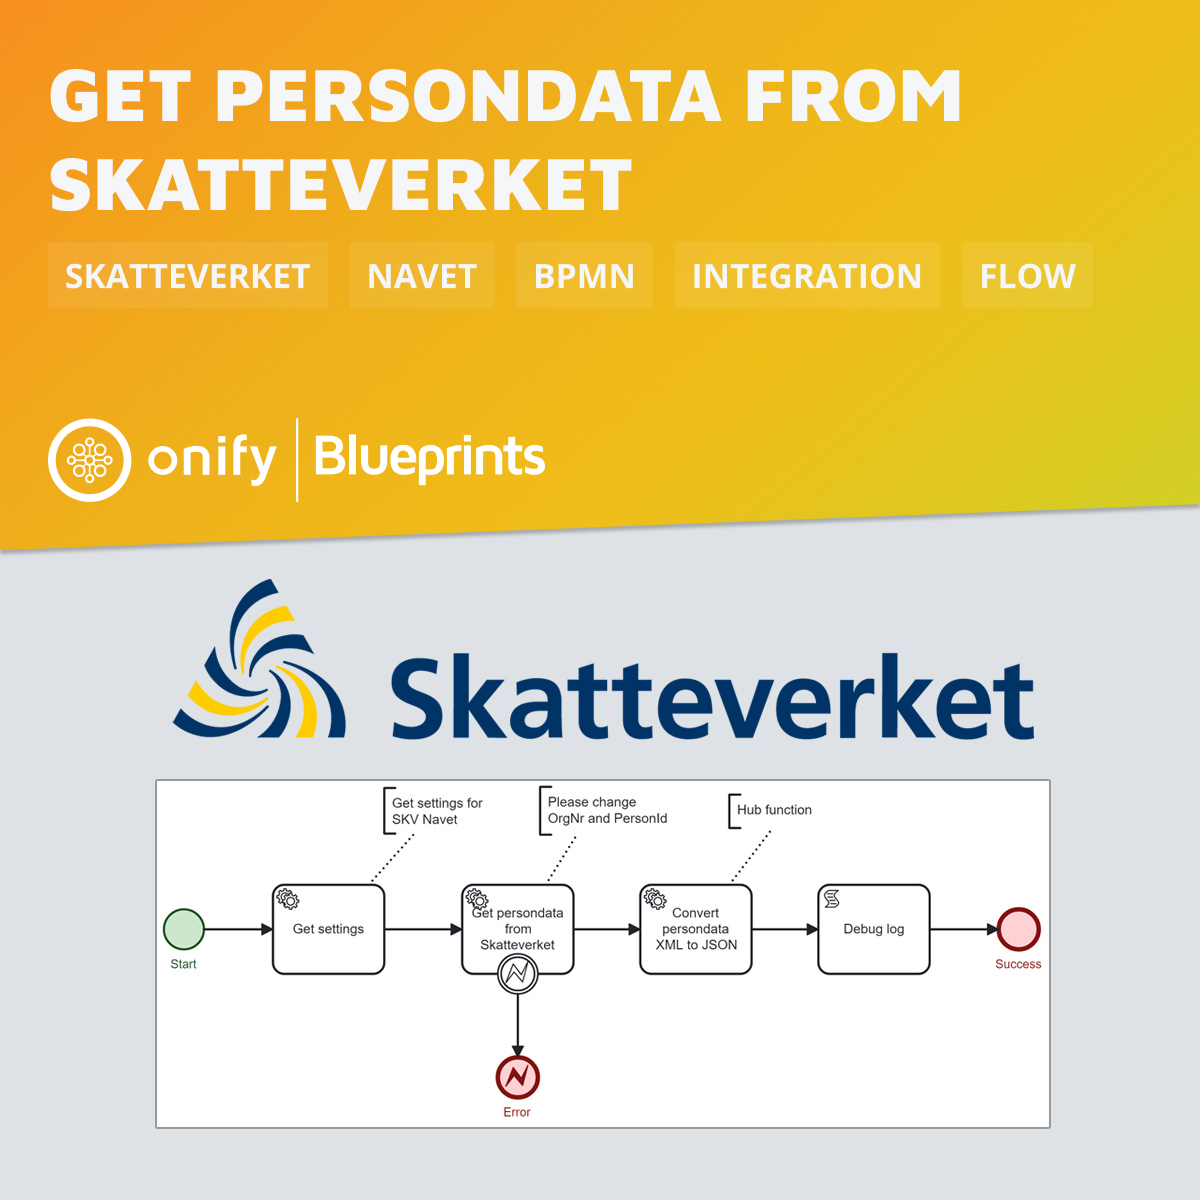 Onify Blueprint: Get persondata from Skatteverket Navet